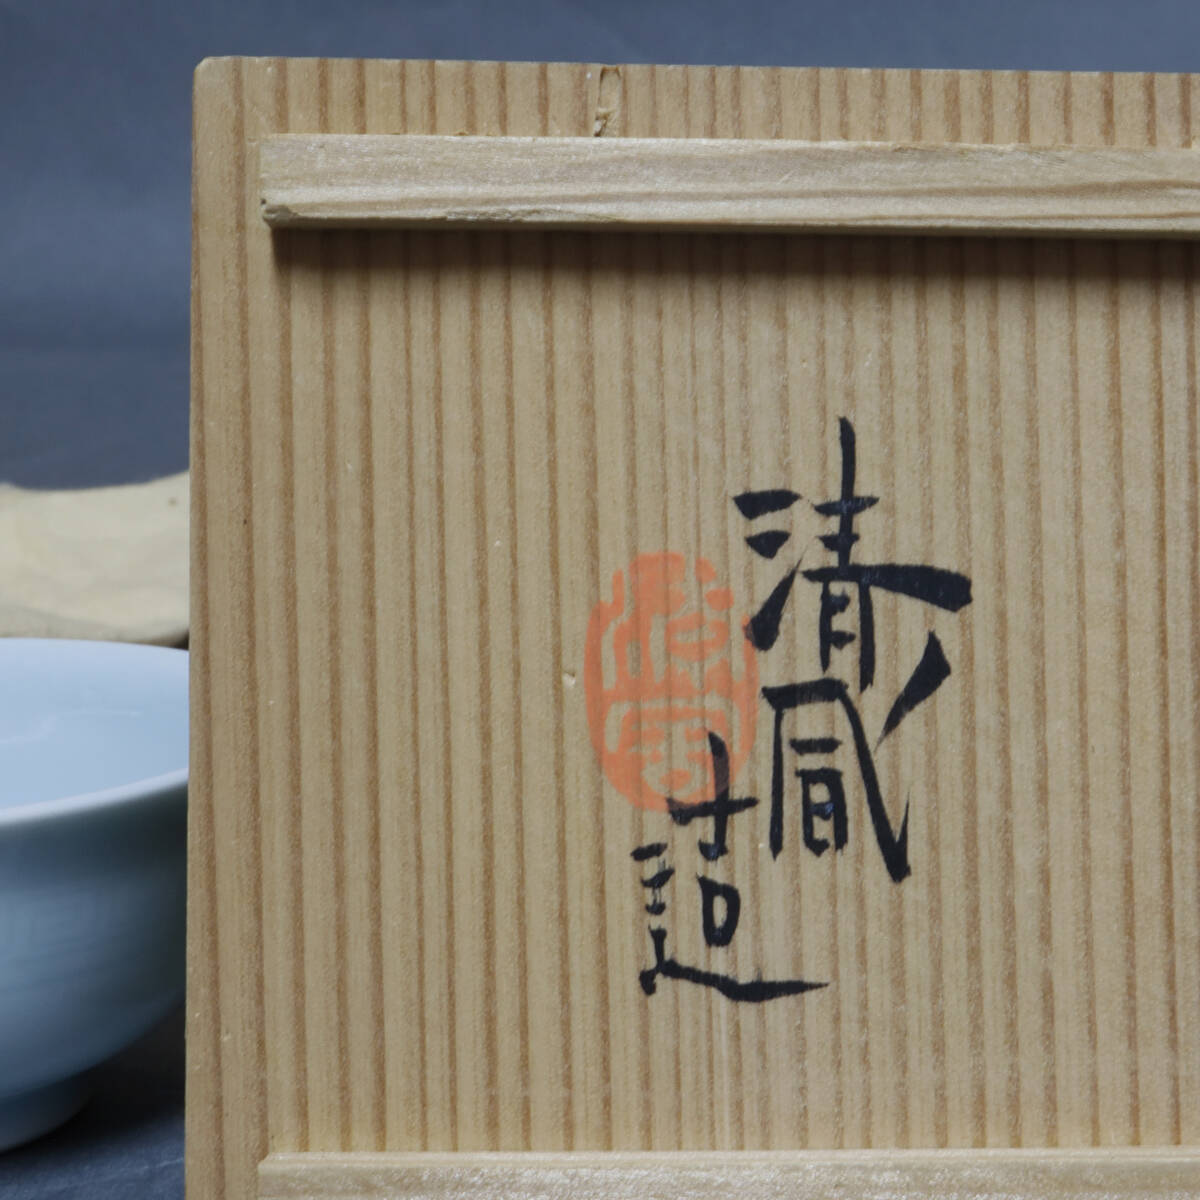 3 fee Kiyoshi manner . flat (.... member ) celadon sake sake cup genuineness guarantee 